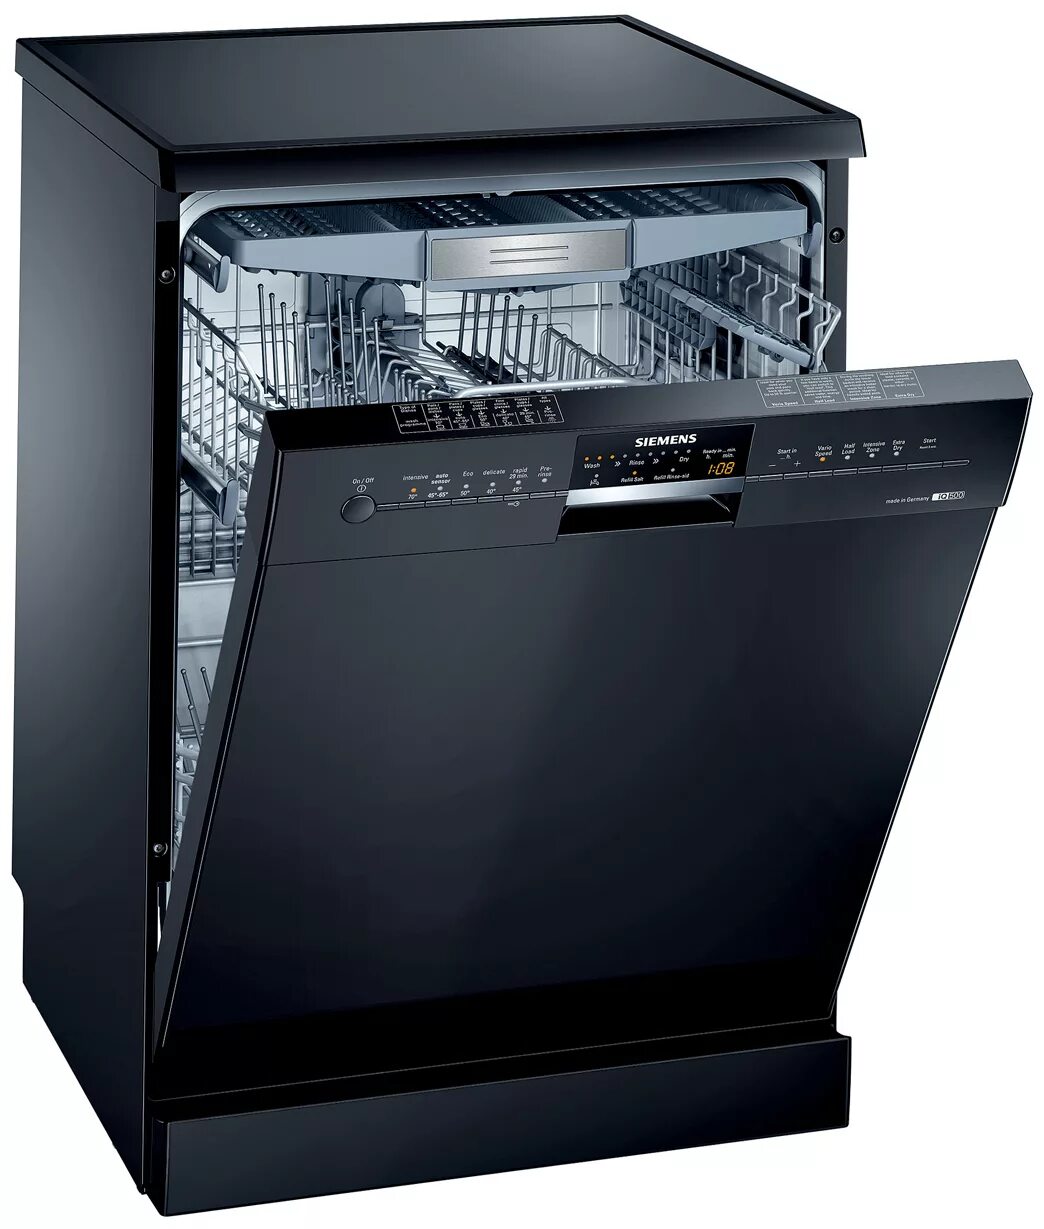 Купить посудомоечную машину видео. Посудомоечная машина Siemens SN 25m888. Siemens 500 посудомоечная машина. Siemens посудомоечная машина sn44d201sk/34. Посудомойка Борк встраиваемая.